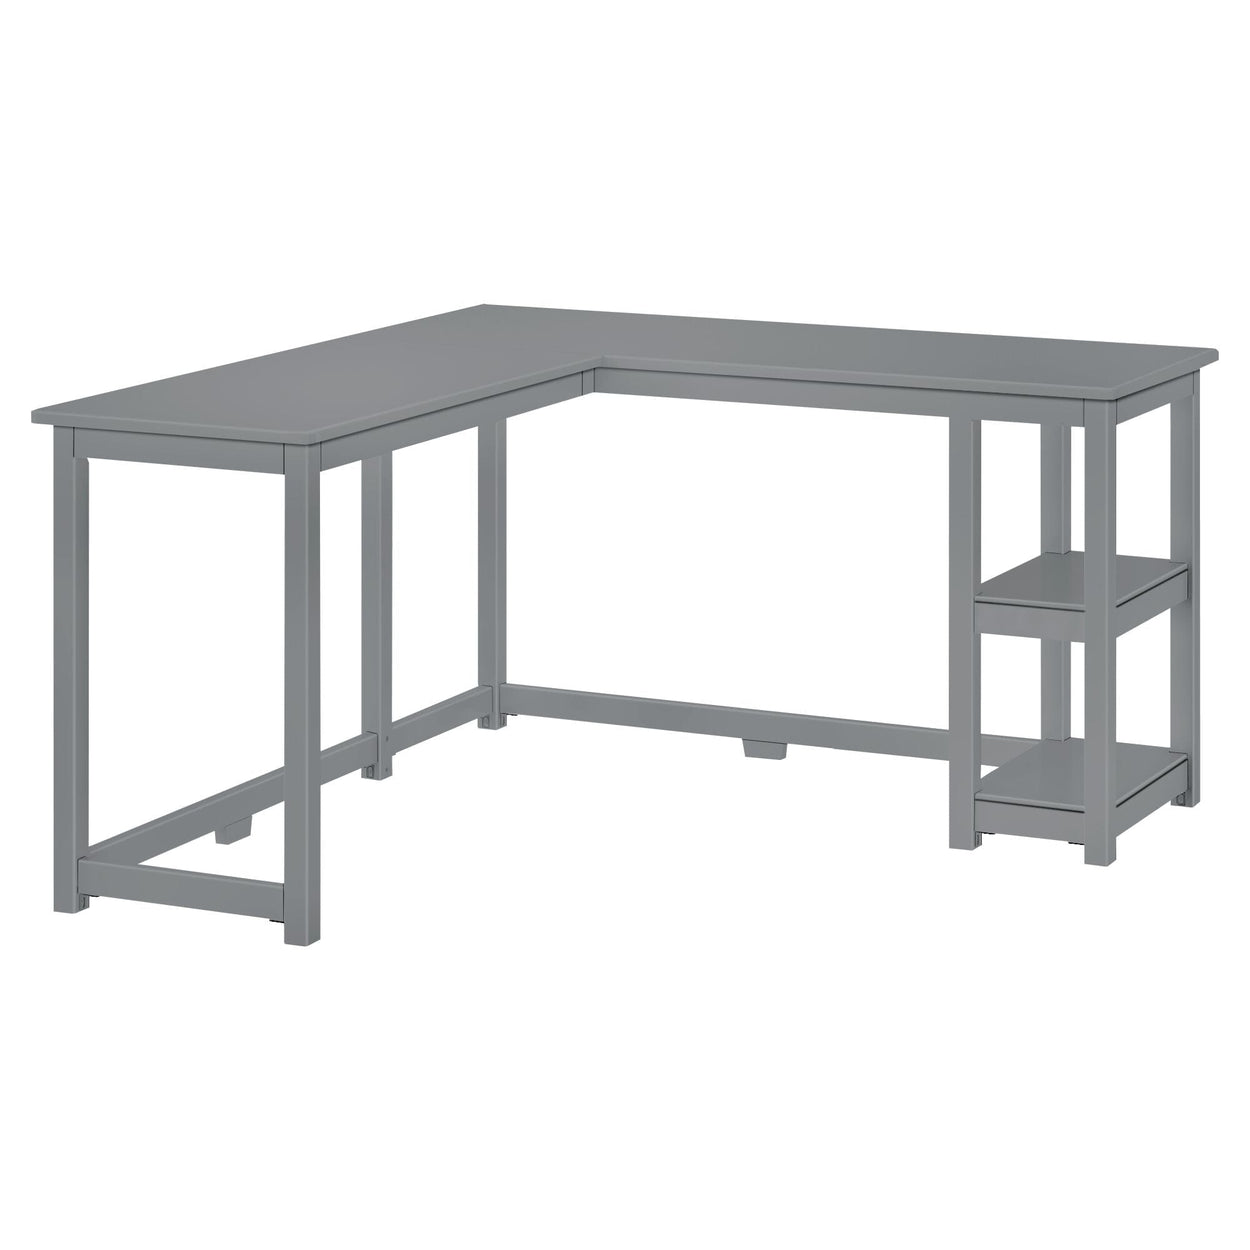 181450-121 : Furniture K/D Corner Desk w/ Shelves, Grey